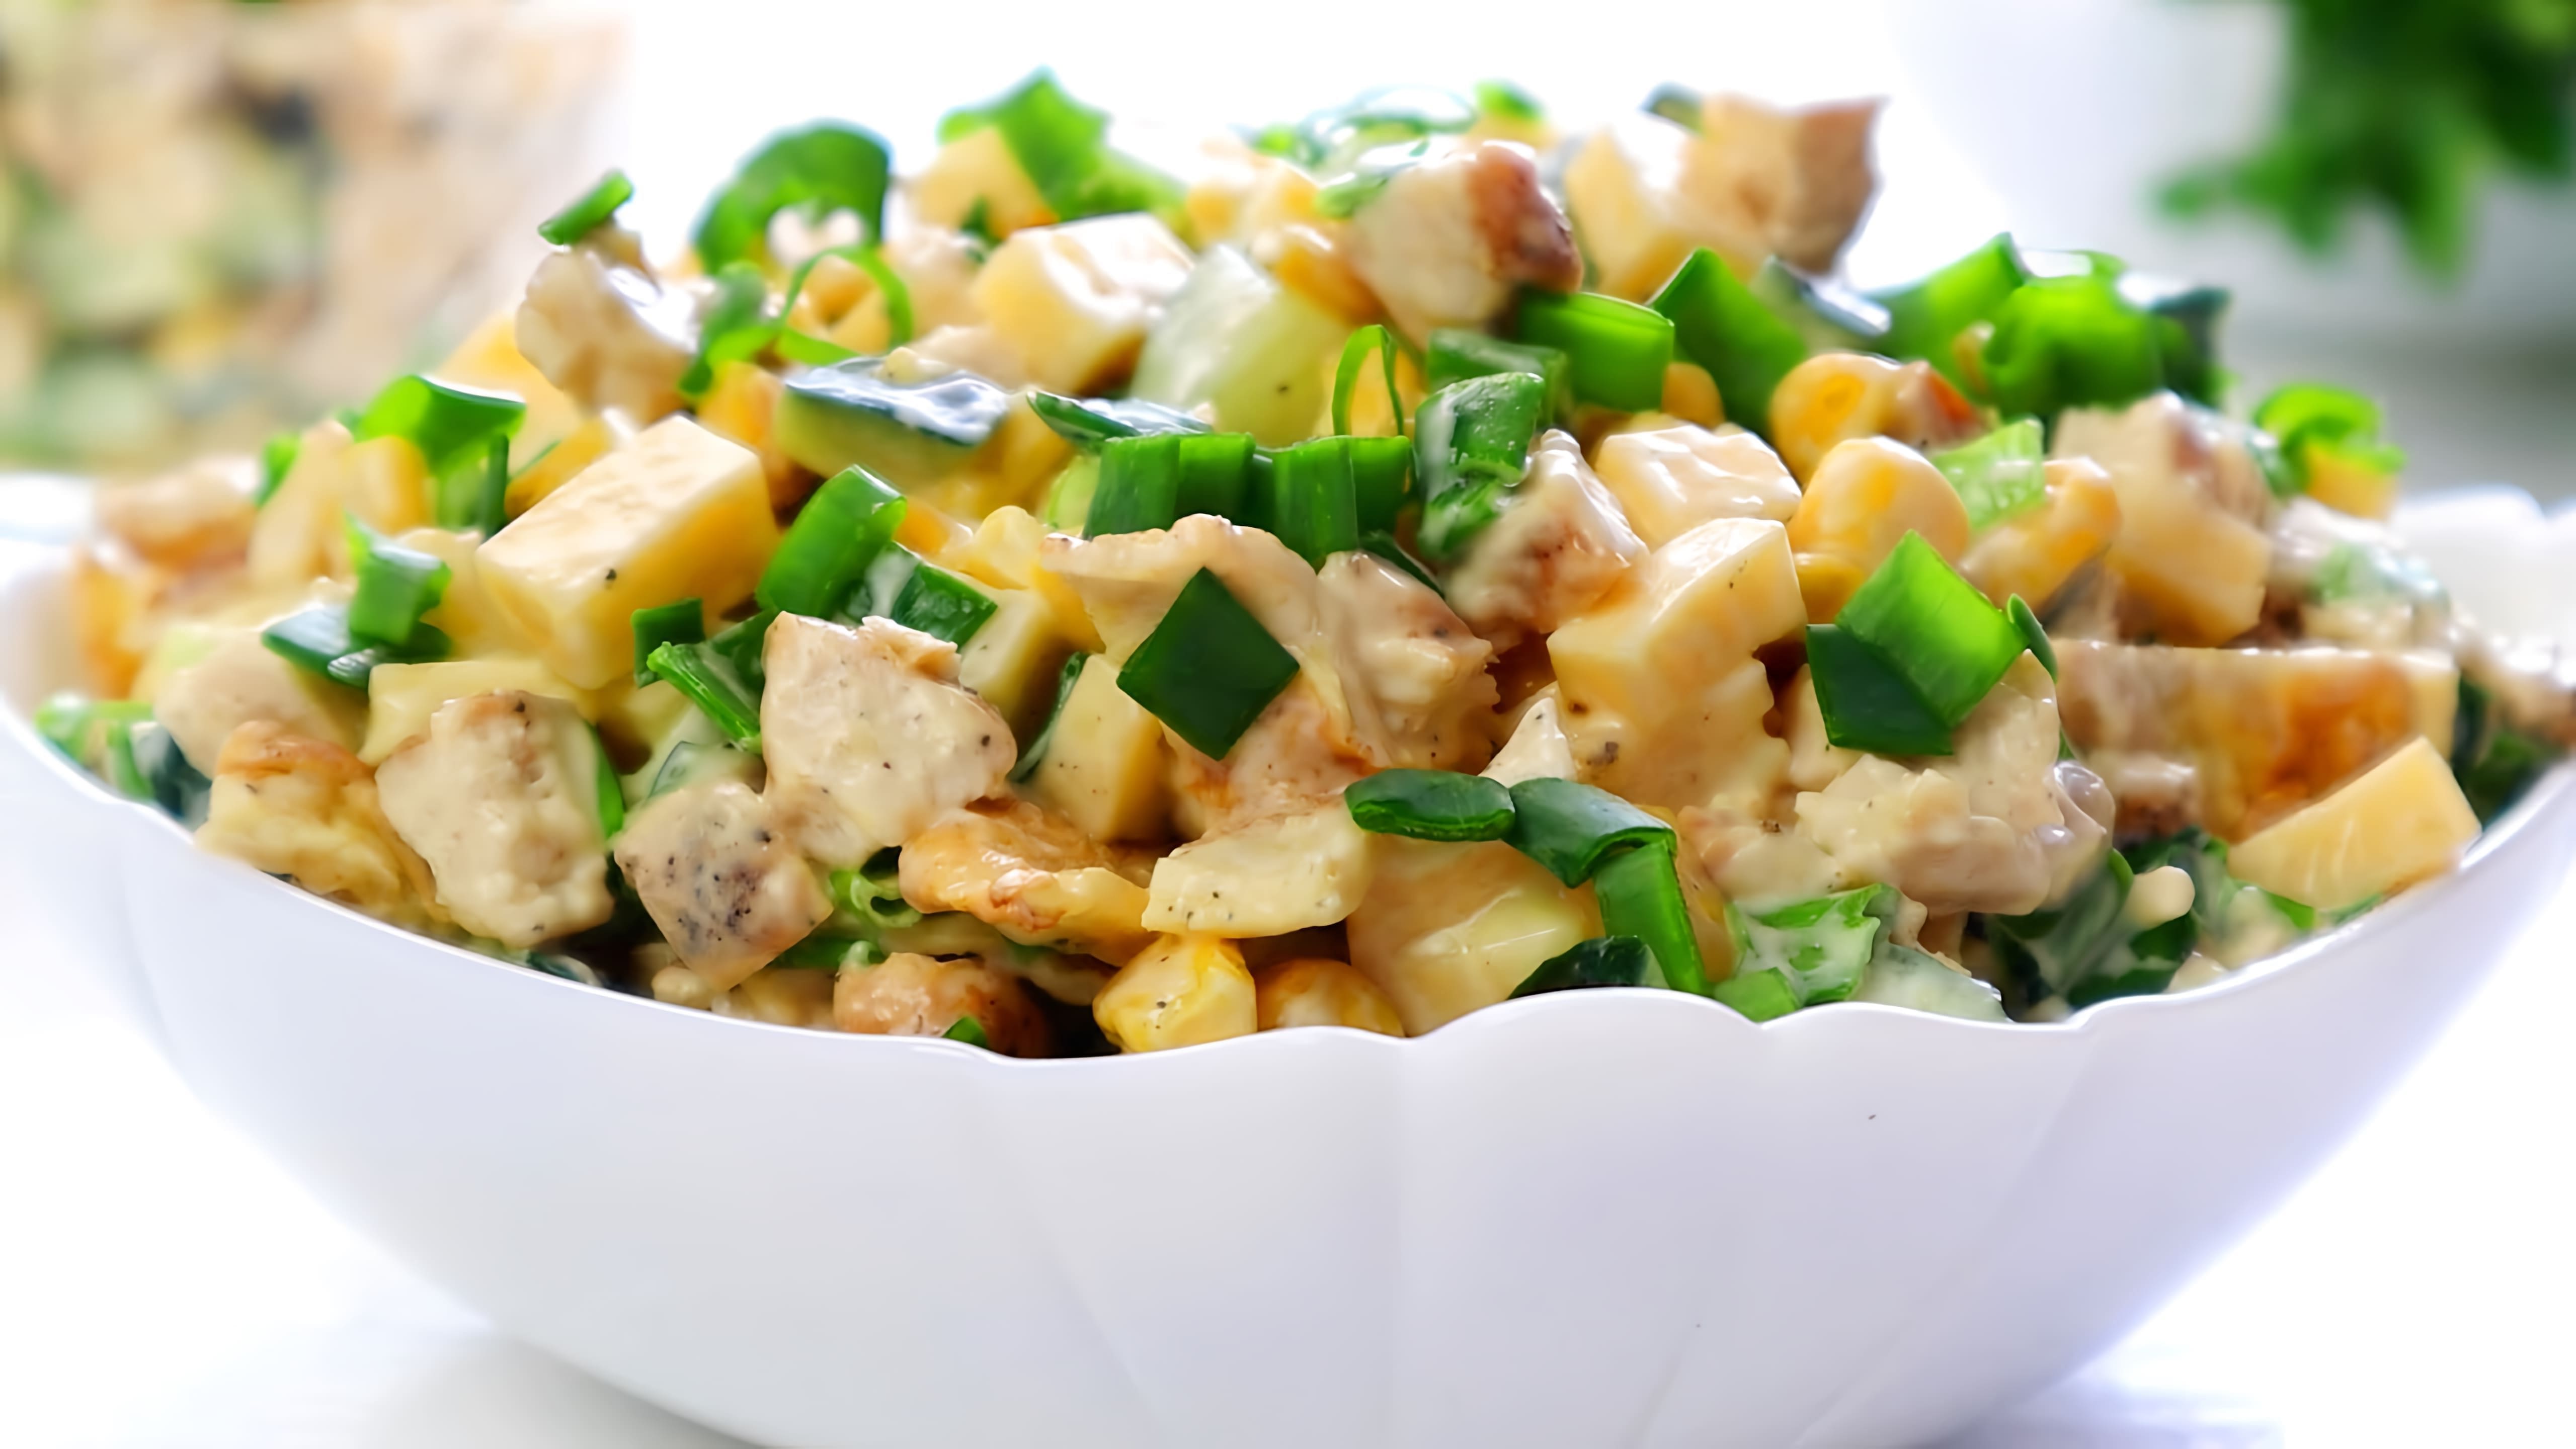 В этом видео демонстрируется рецепт приготовления очень вкусного салата с курицей